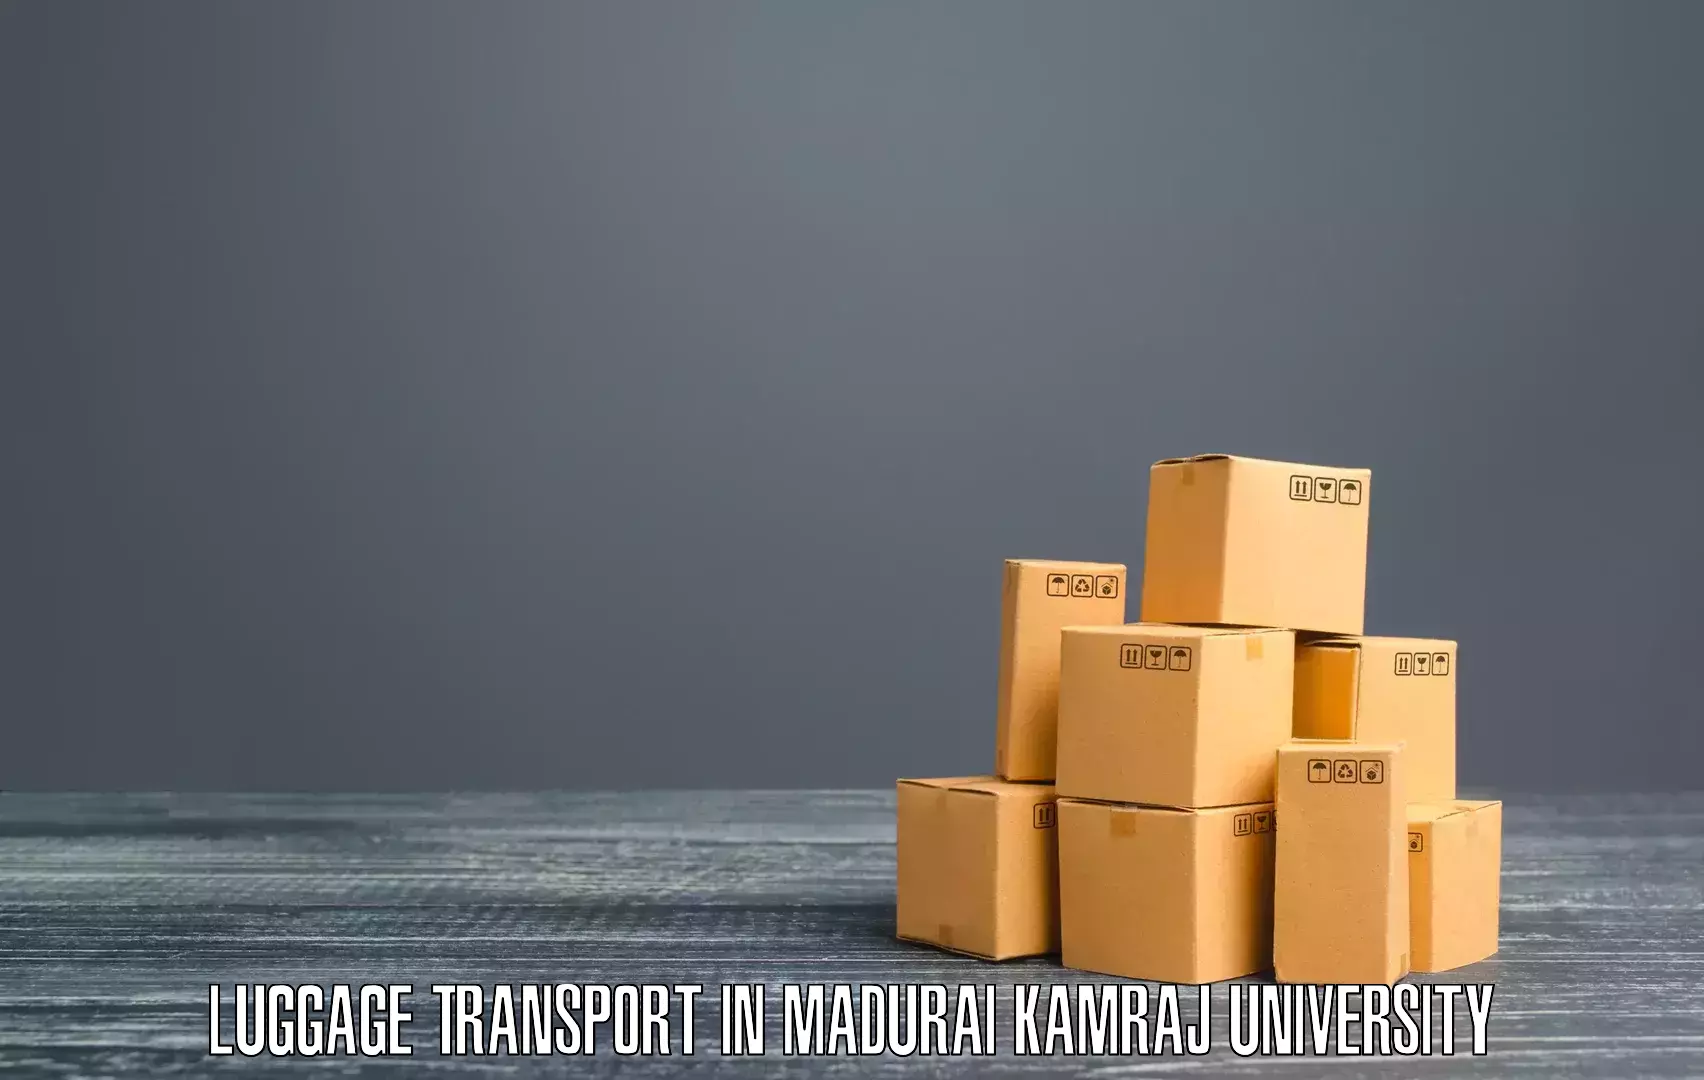 Corporate baggage transport in Madurai Kamraj University